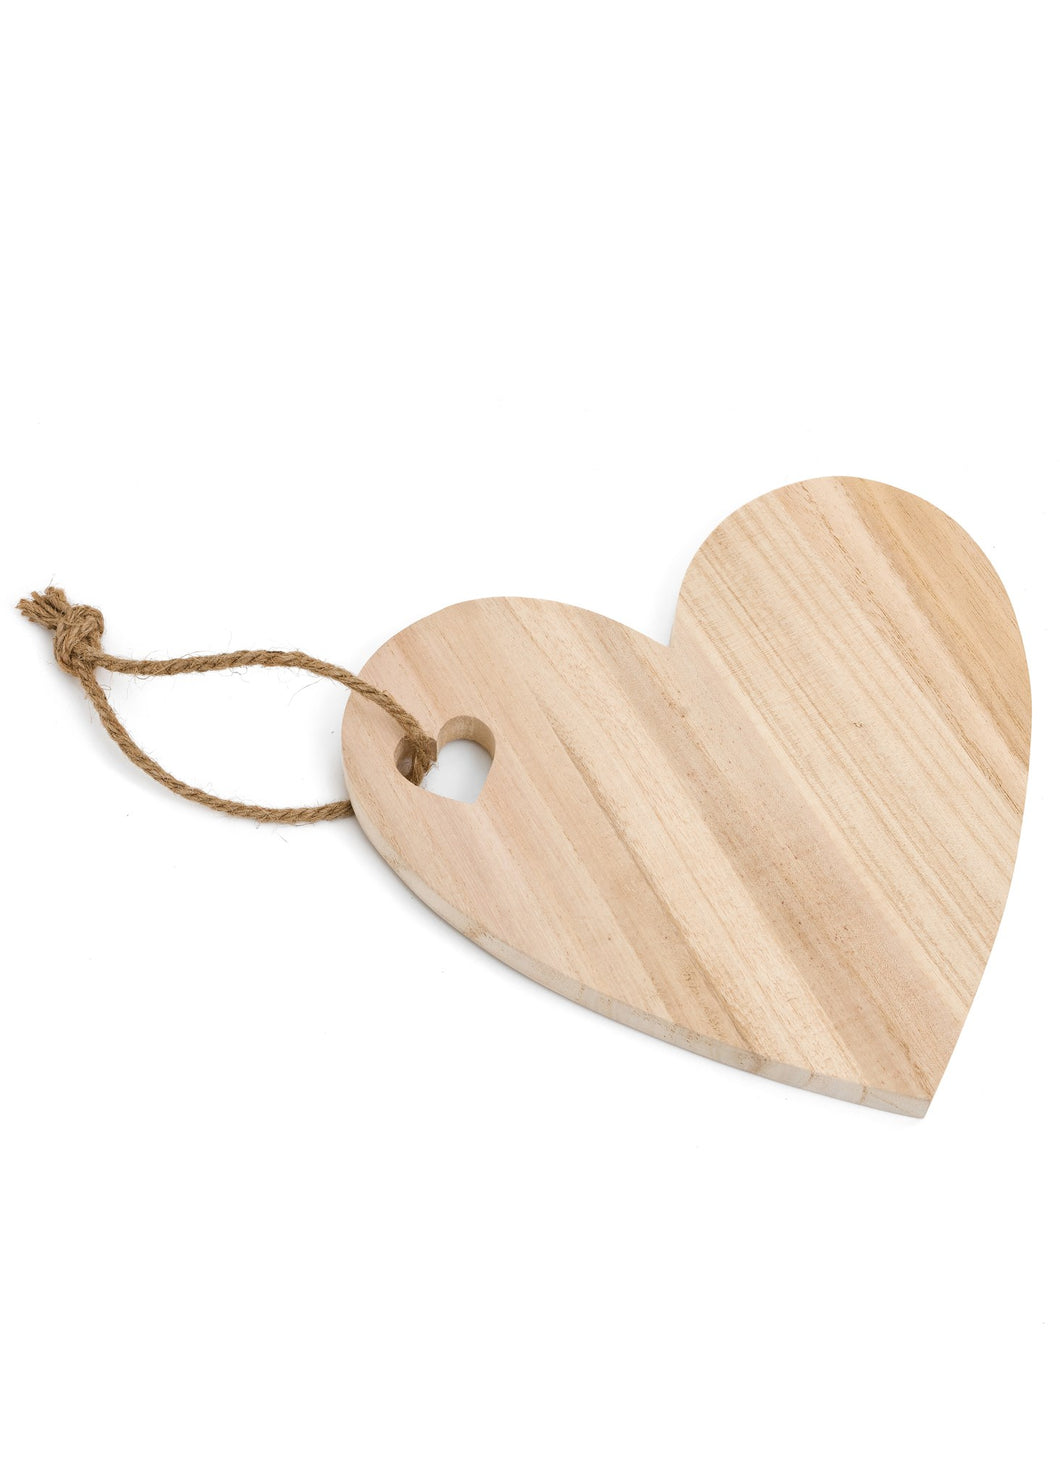 Heart Shaped Wooden Serving Board